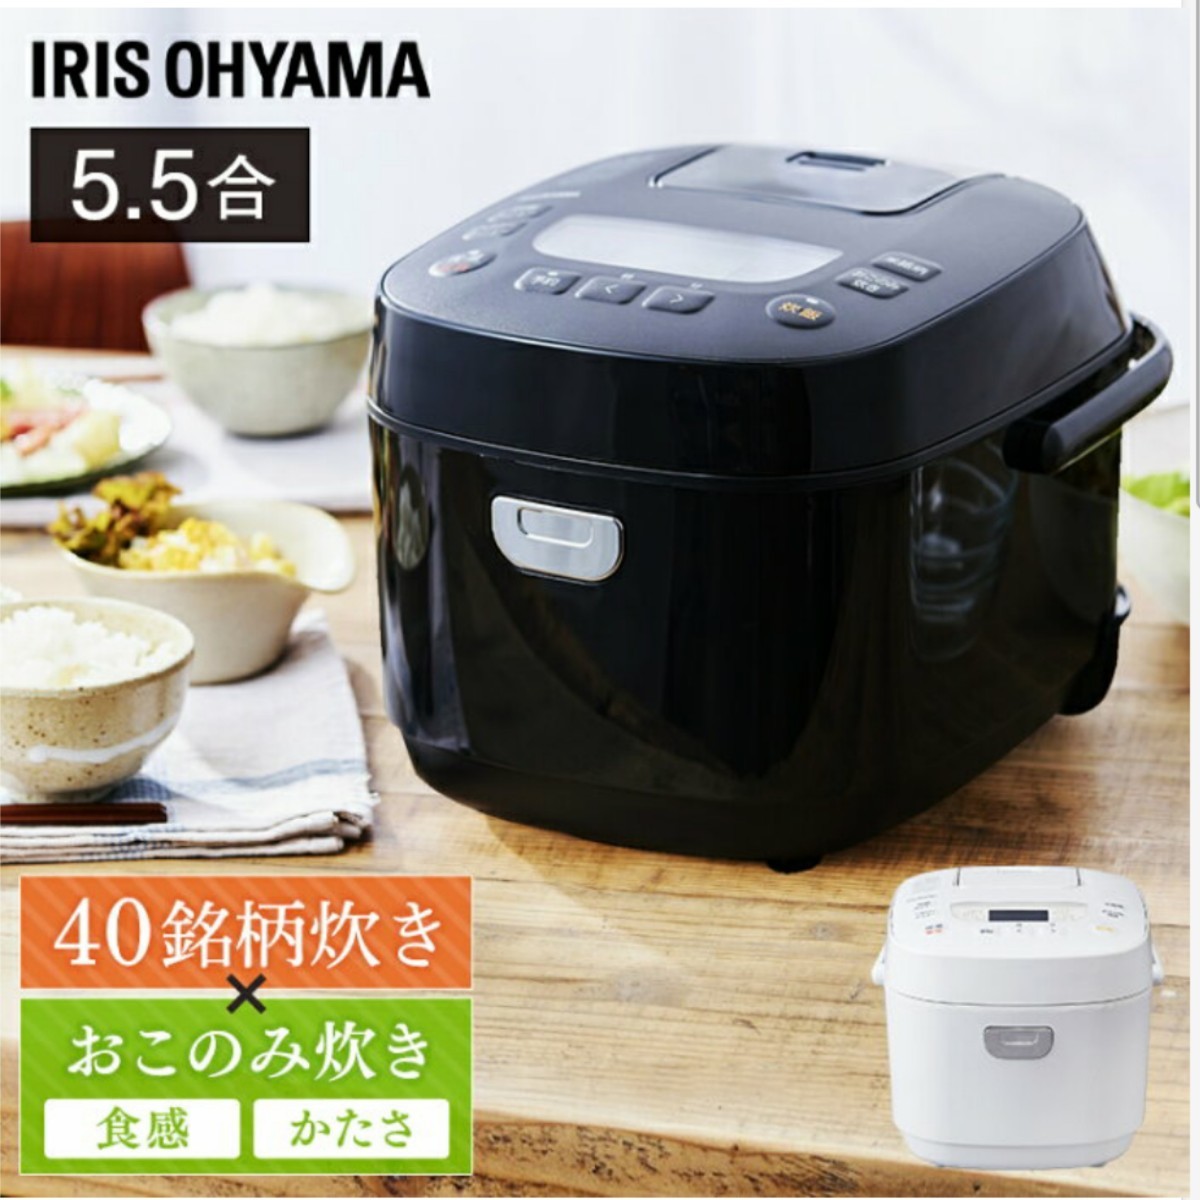 【新品、未開封】アイリスオーヤマ 銘柄炊飯器 5.5合炊飯器 ブラック